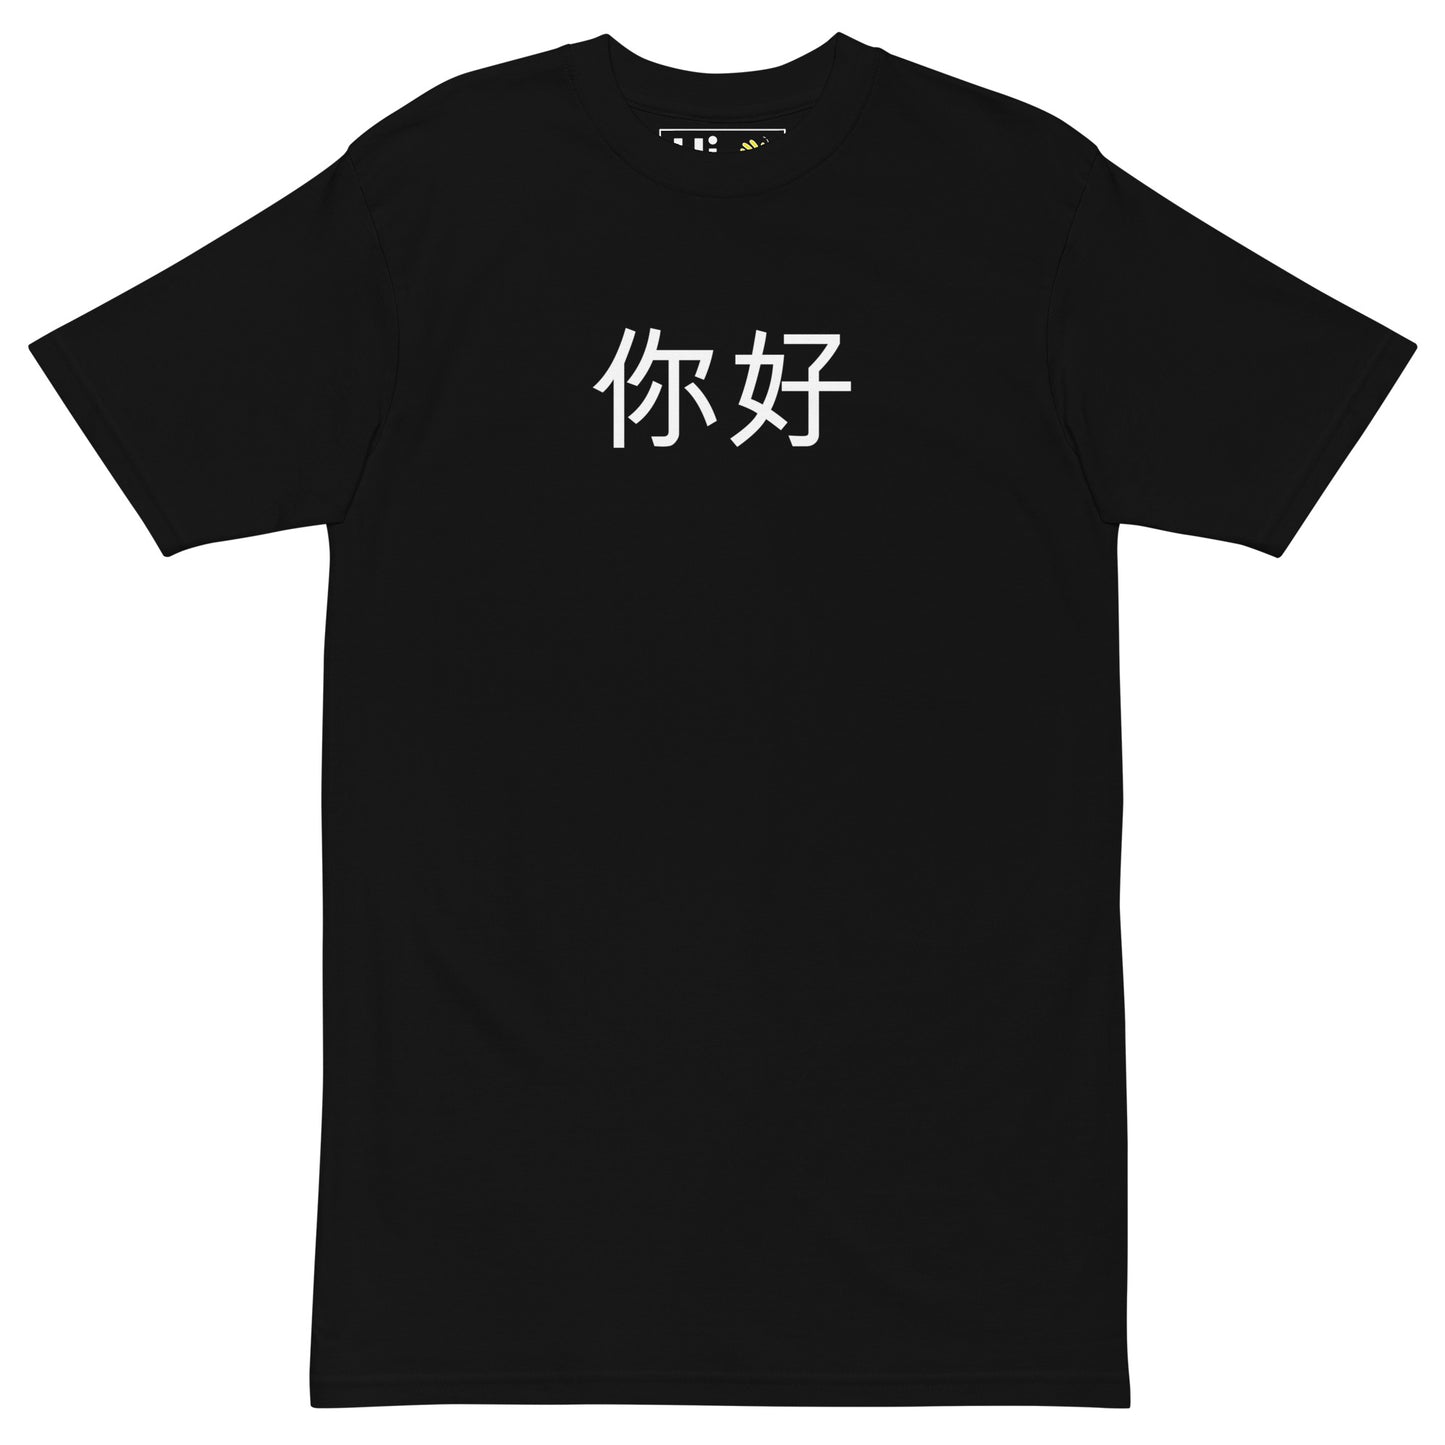 Hi 你好 "Nĭhǎo" Chinese in Pinyin